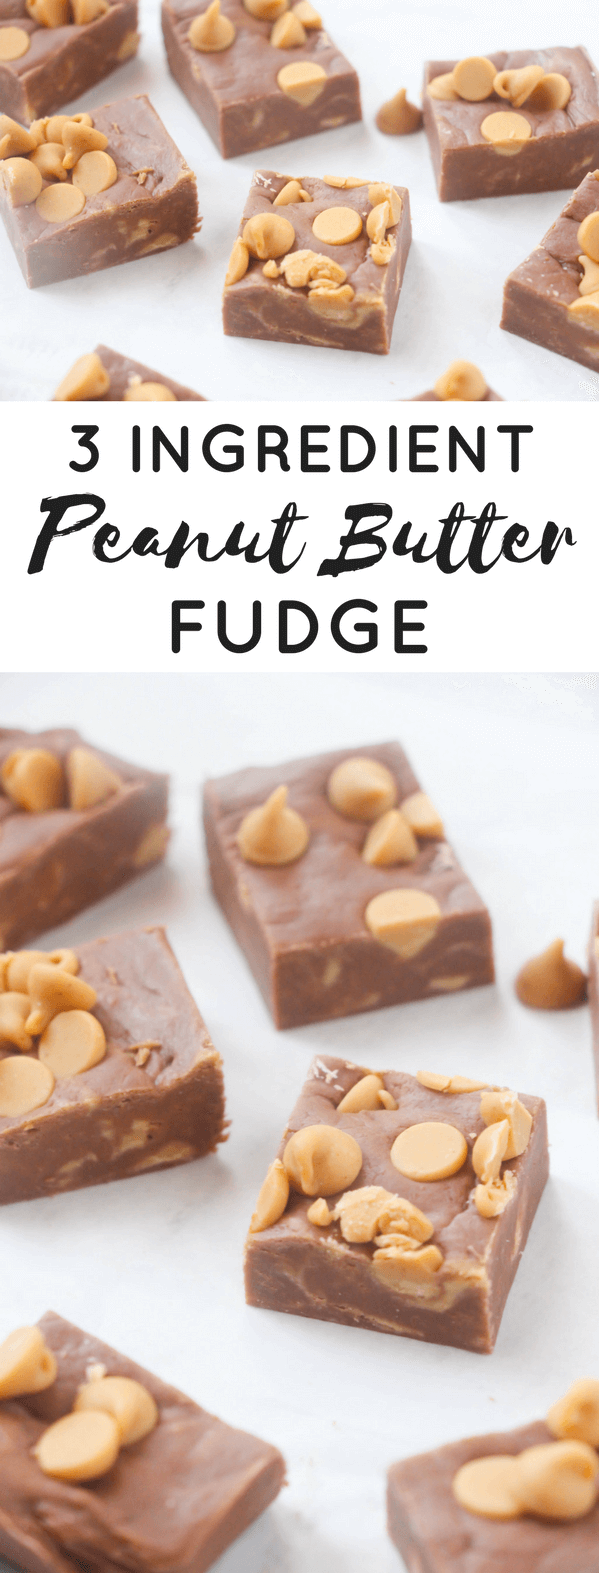 Easy 3-Ingredient Peanut Butter Fudge Recipe